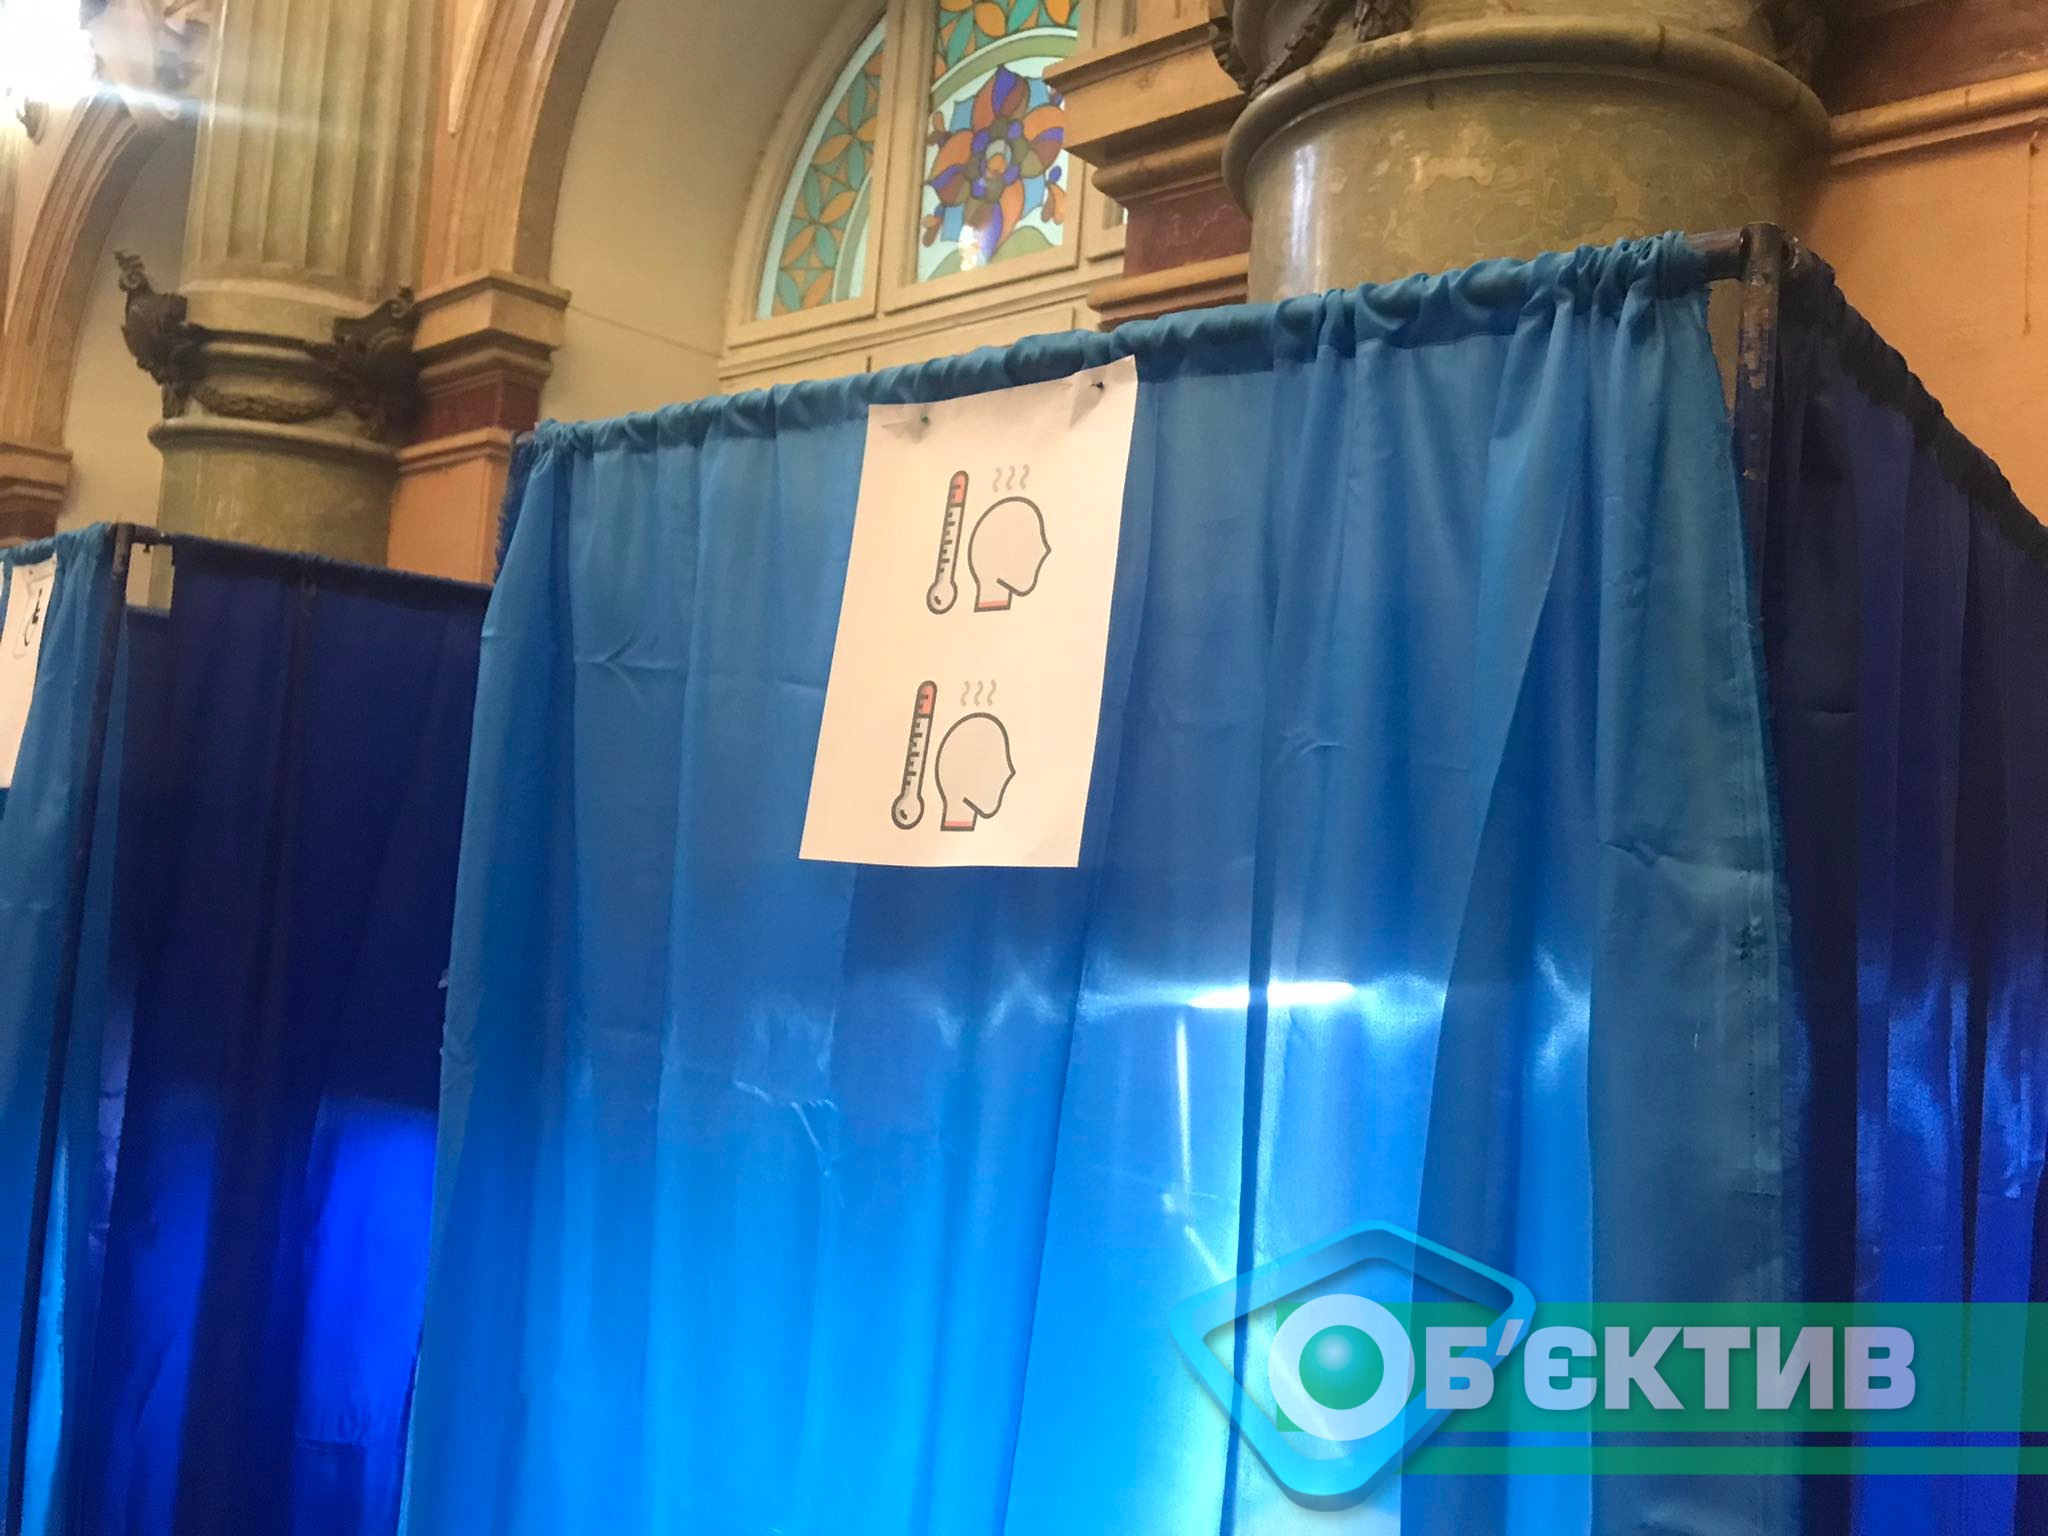 Кабинка для голосования на выборах мэра Харькова